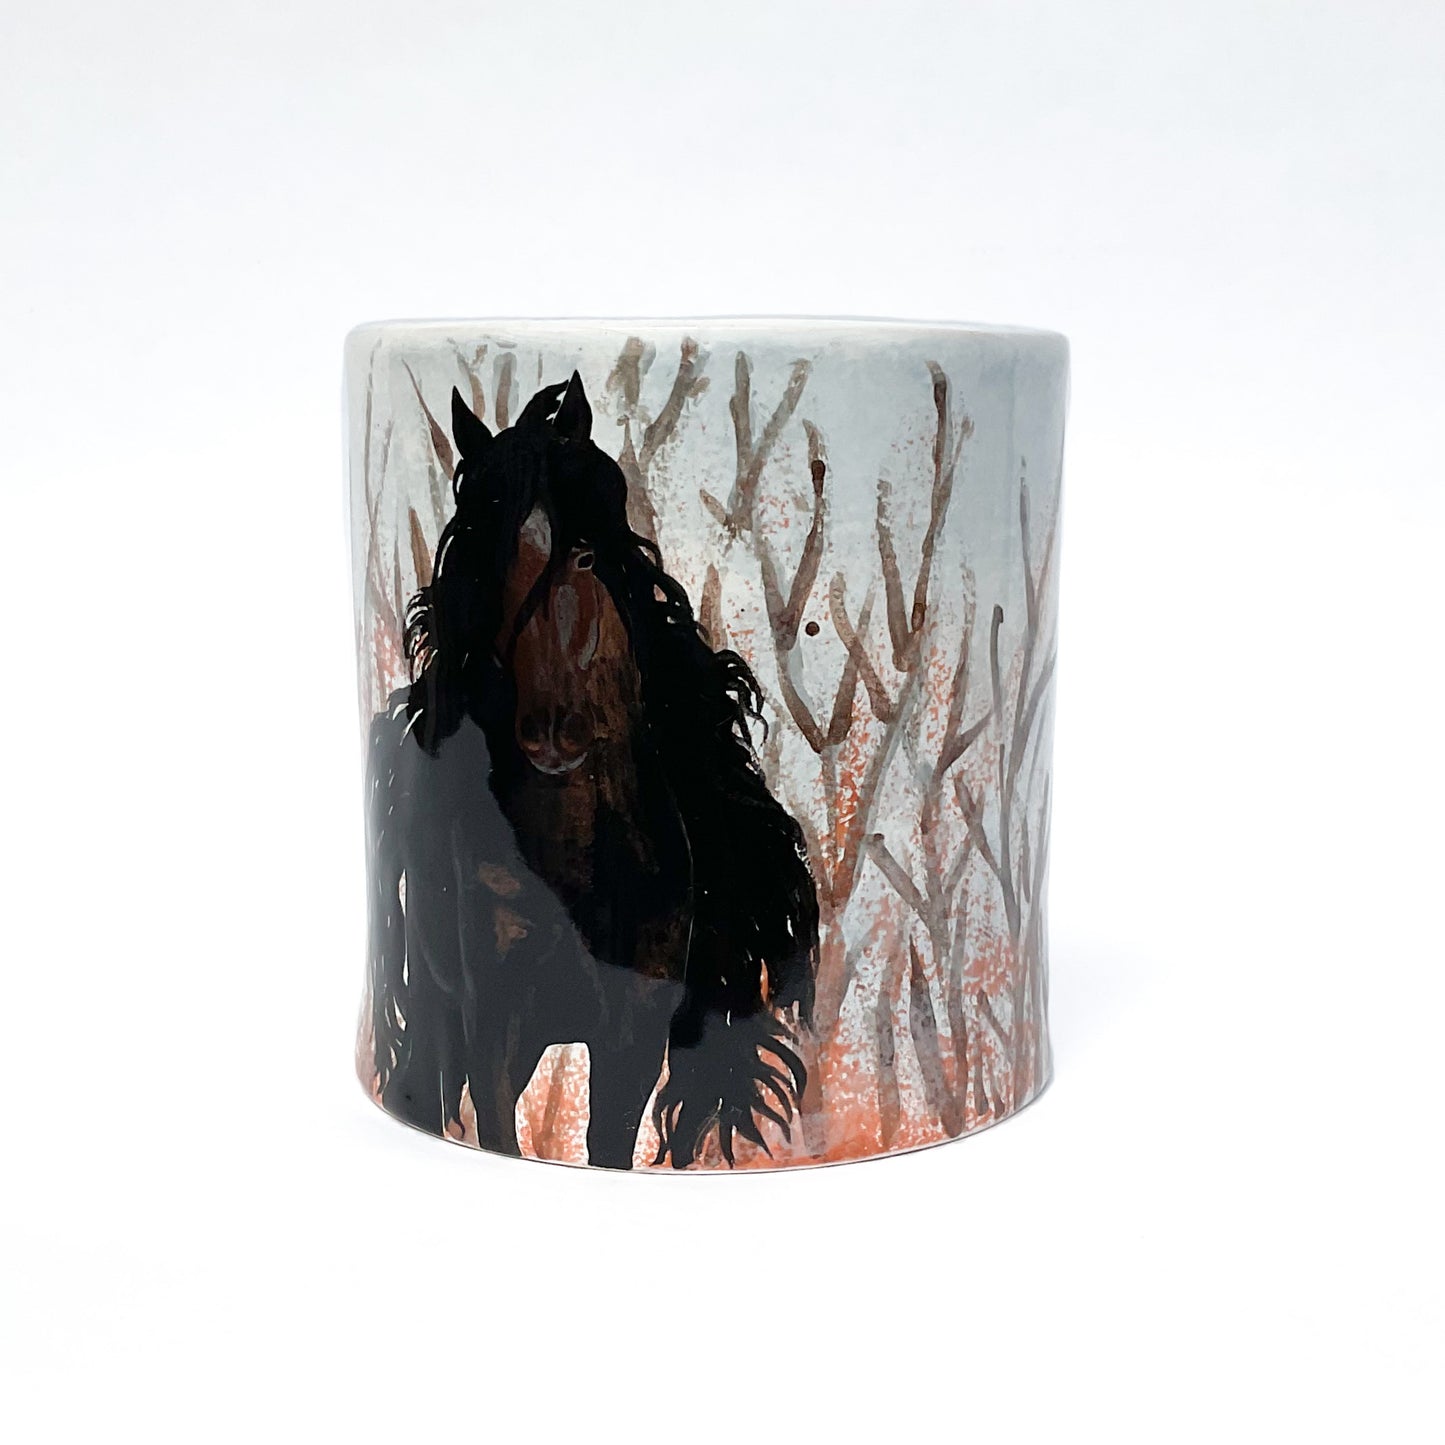 Handsome Stud Ceramic Horse Pot - Decorative Ceramic Horse Vessel